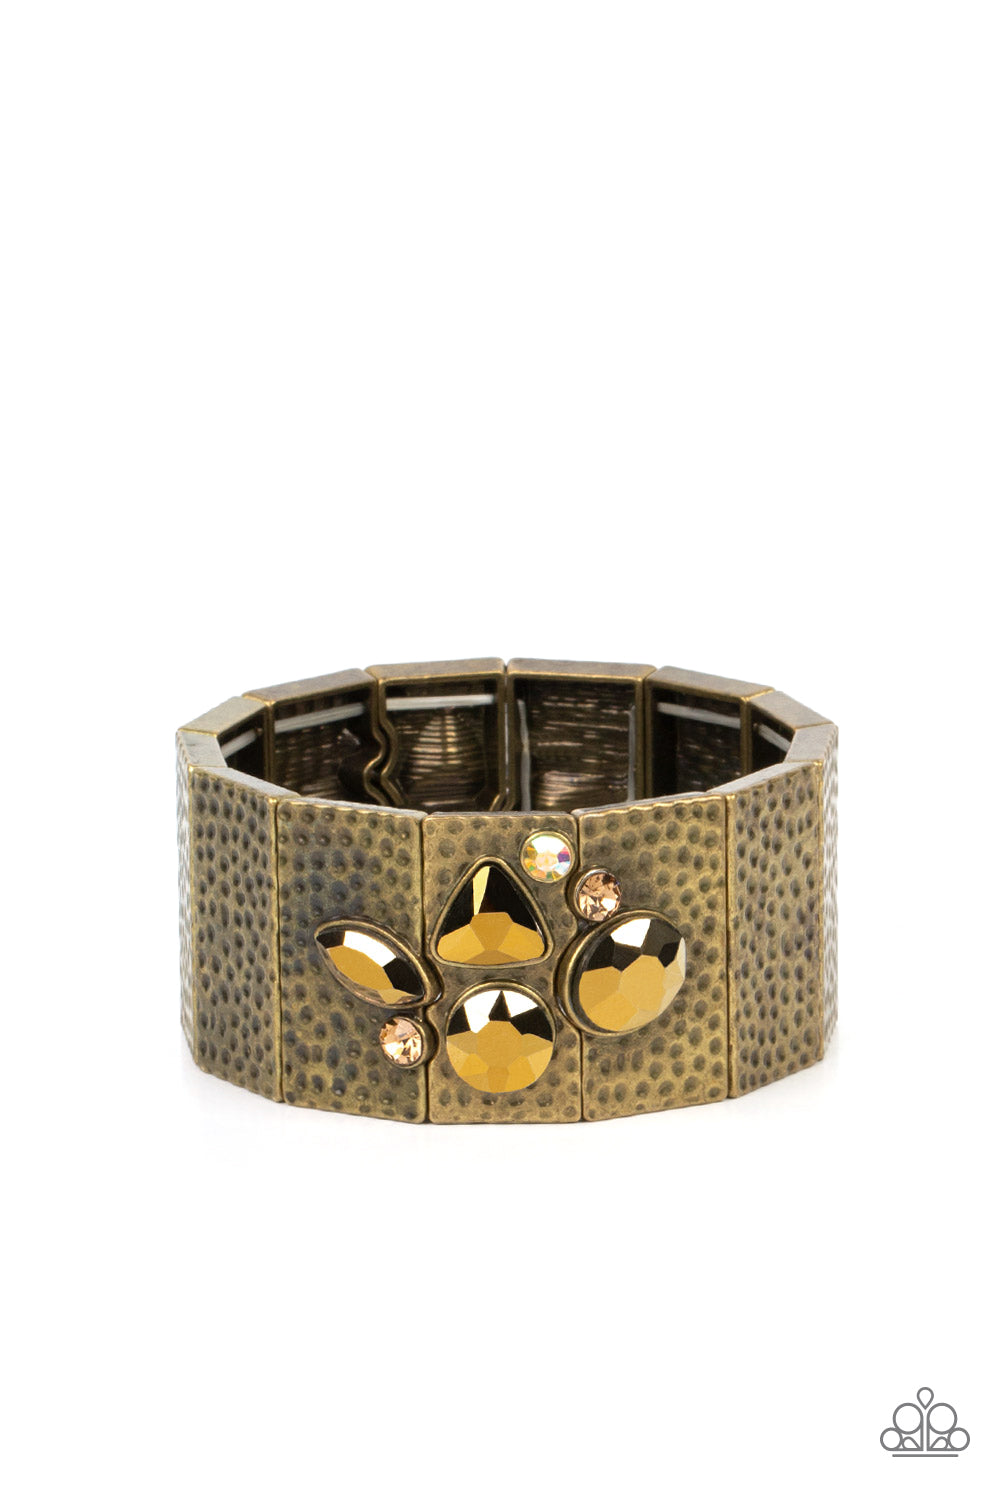 Paparazzi Accessories - Flickering Fortune #B700 Drawer - Brass Bracelet